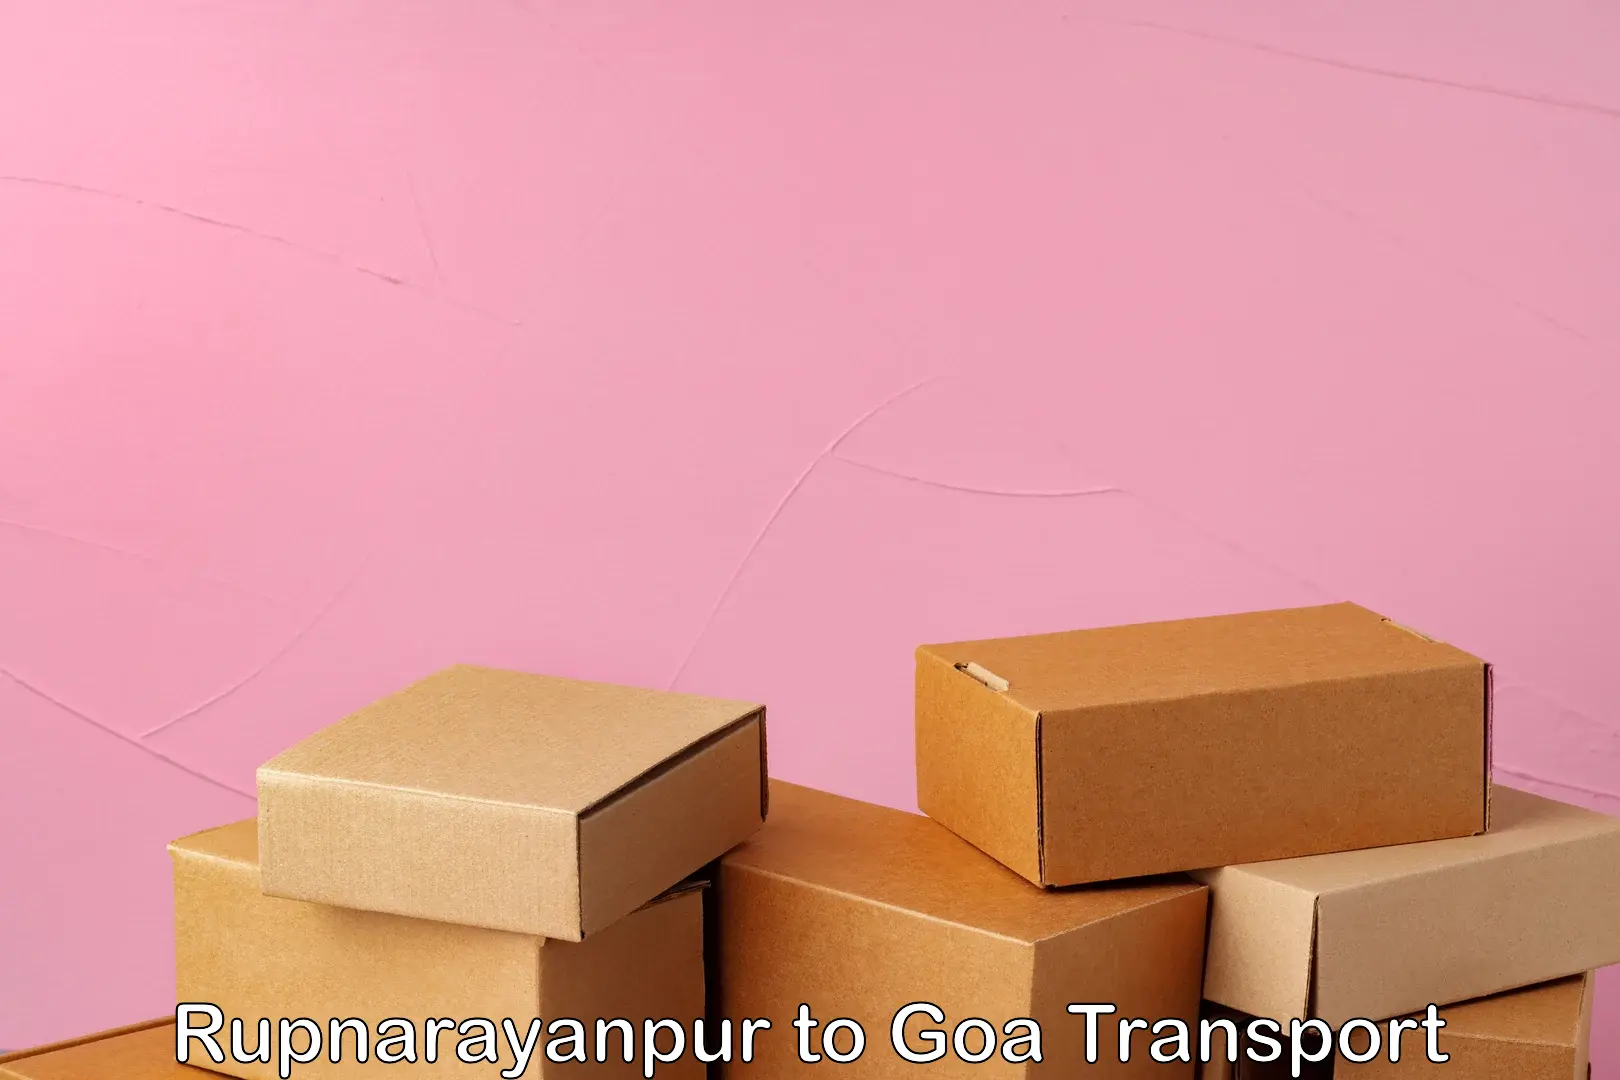 Shipping partner Rupnarayanpur to Goa